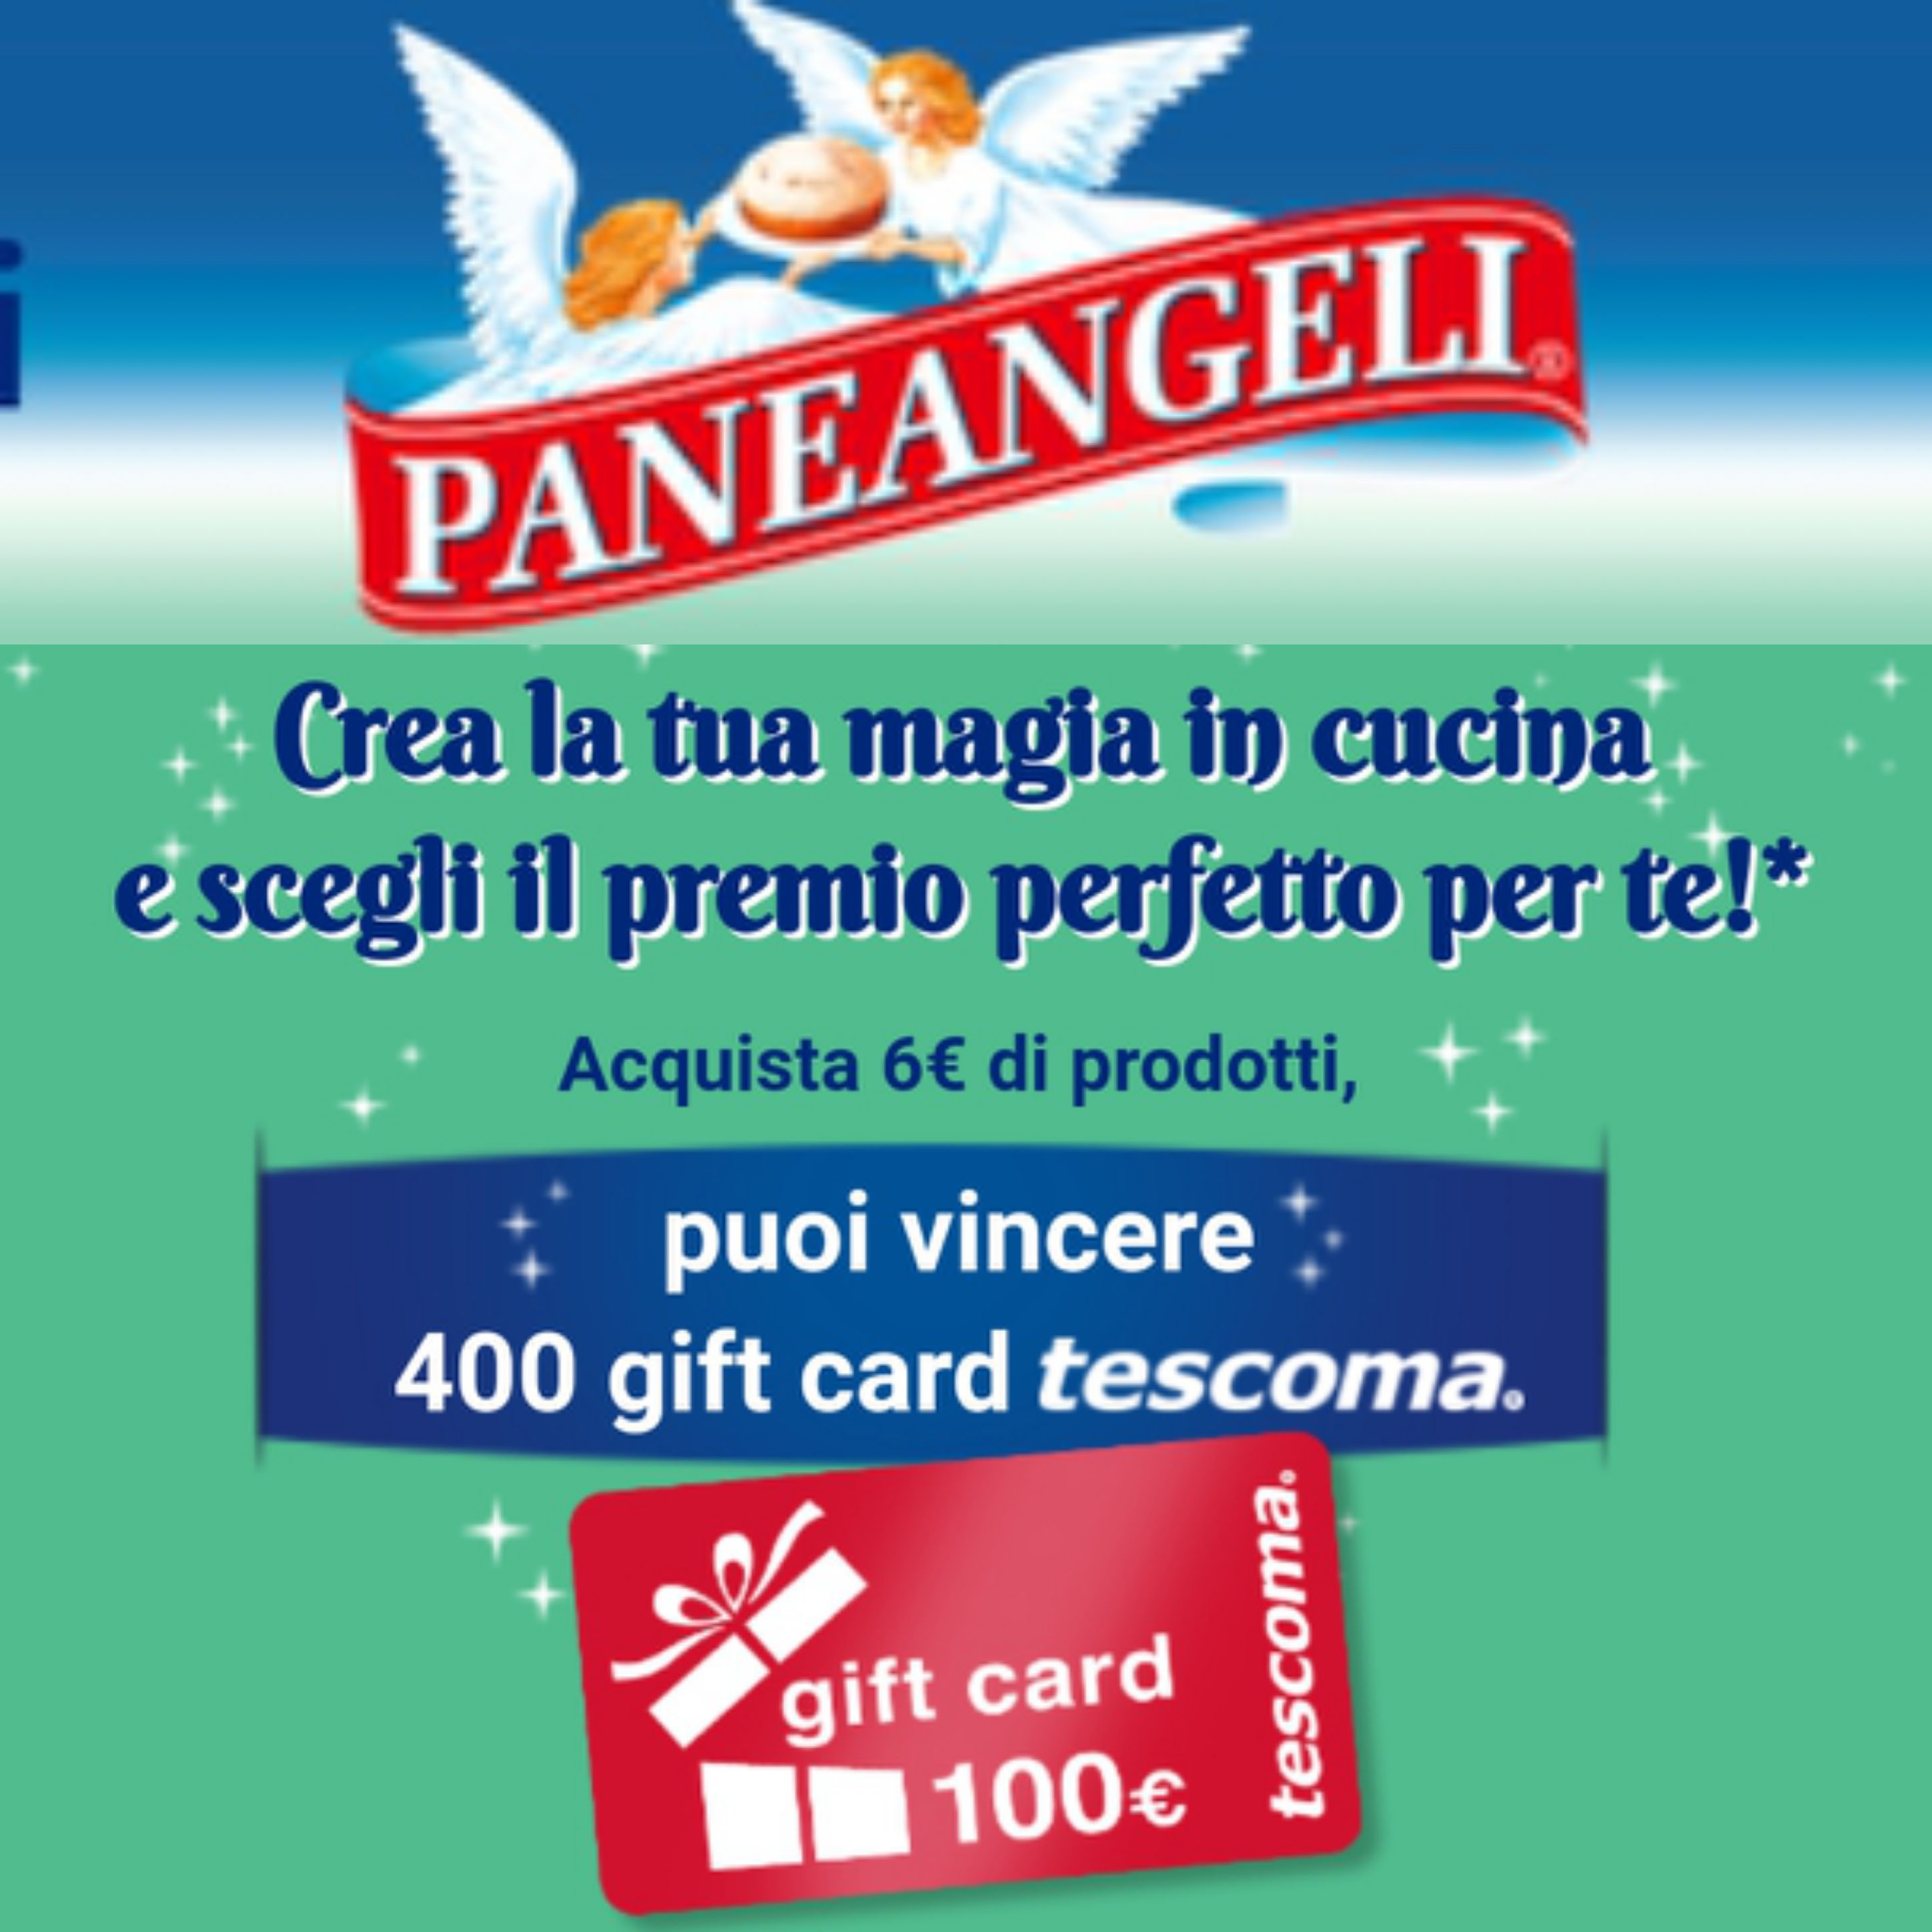 Vinci gift da 100€ tescoma con Paneangeli  “Ad ognuno il suo premio”